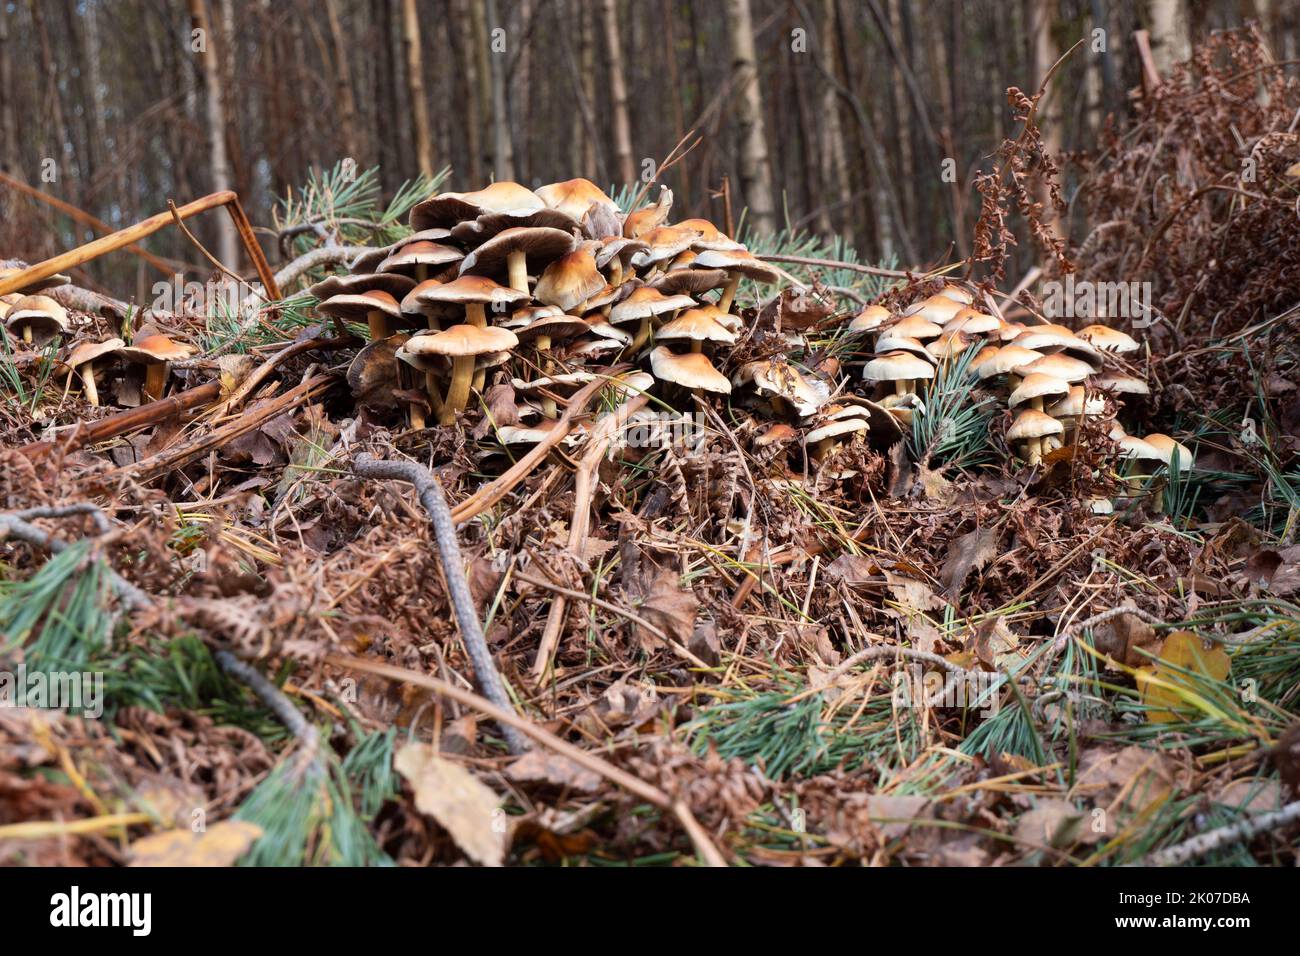 Der Pilz gemeiner Schwefelkopf oder im lateinischen Hypholoma fasciculare in einer großen Gruppe auf verwelkten Blättern und Ästen im Herbst Stockfoto